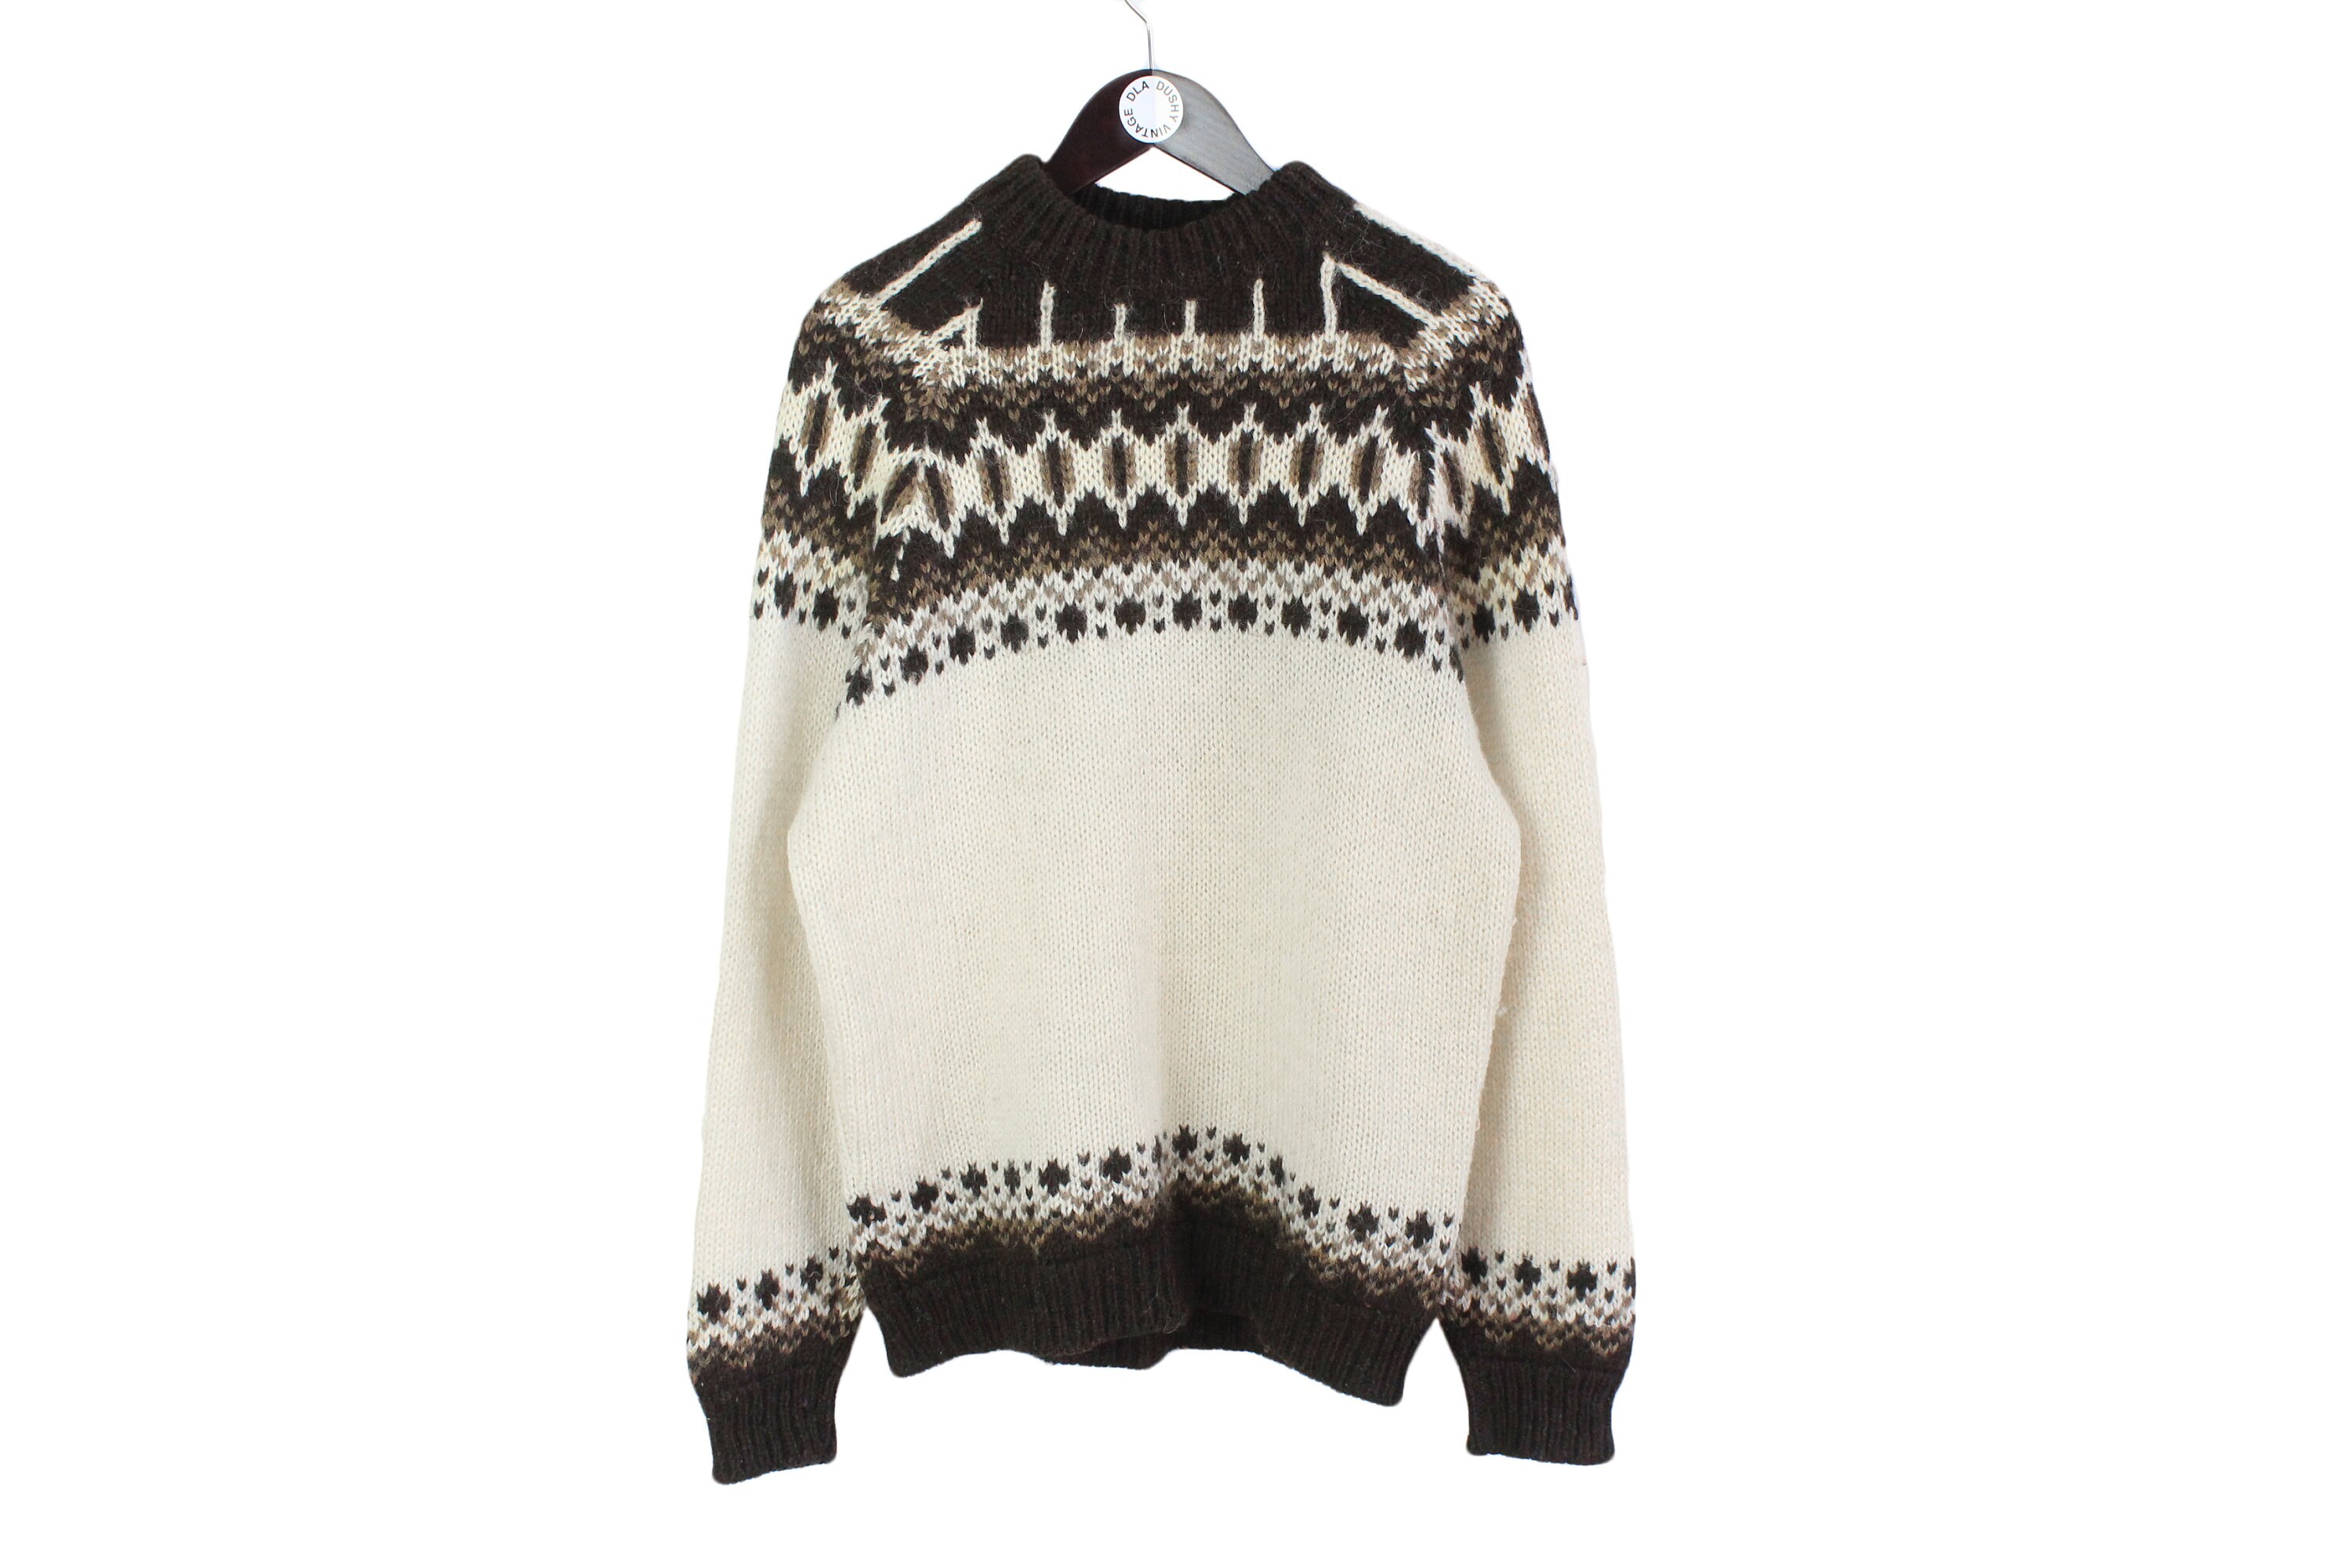 【はこぽす対応商品】 Nordic RUNOX 80s pattern knit求心 pullover ニット/セーター